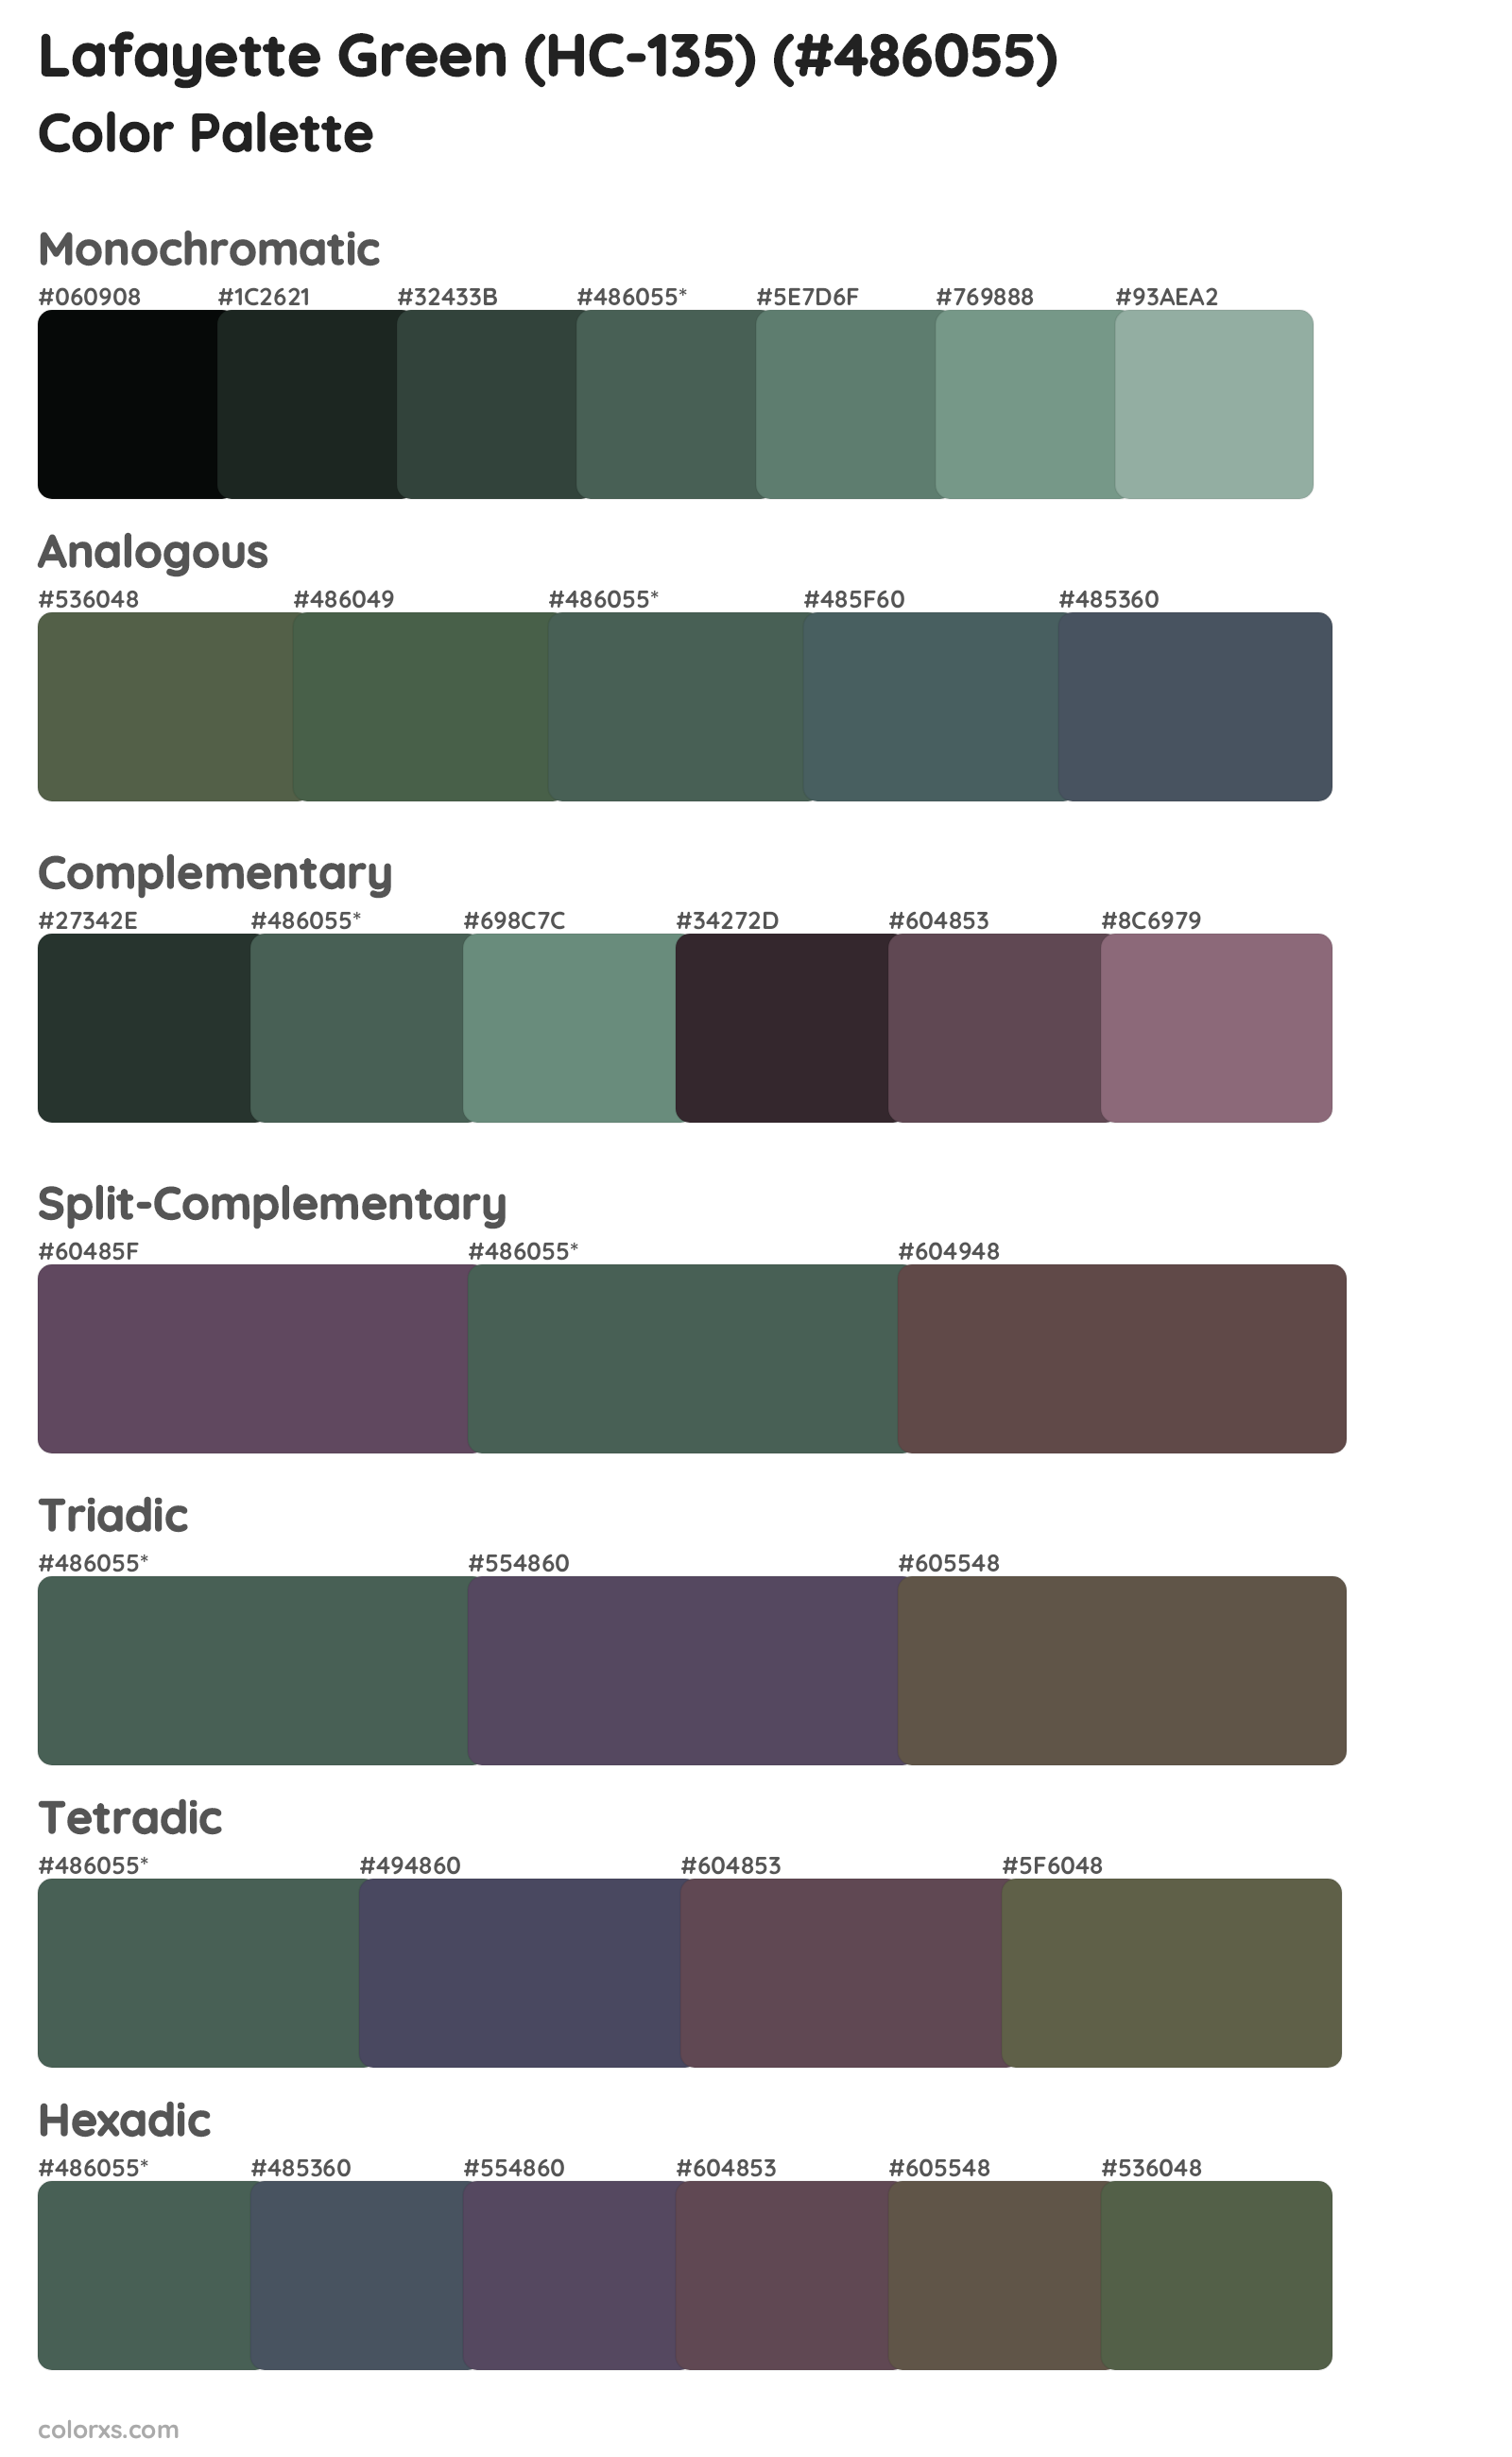 Lafayette Green (HC-135) Color Scheme Palettes